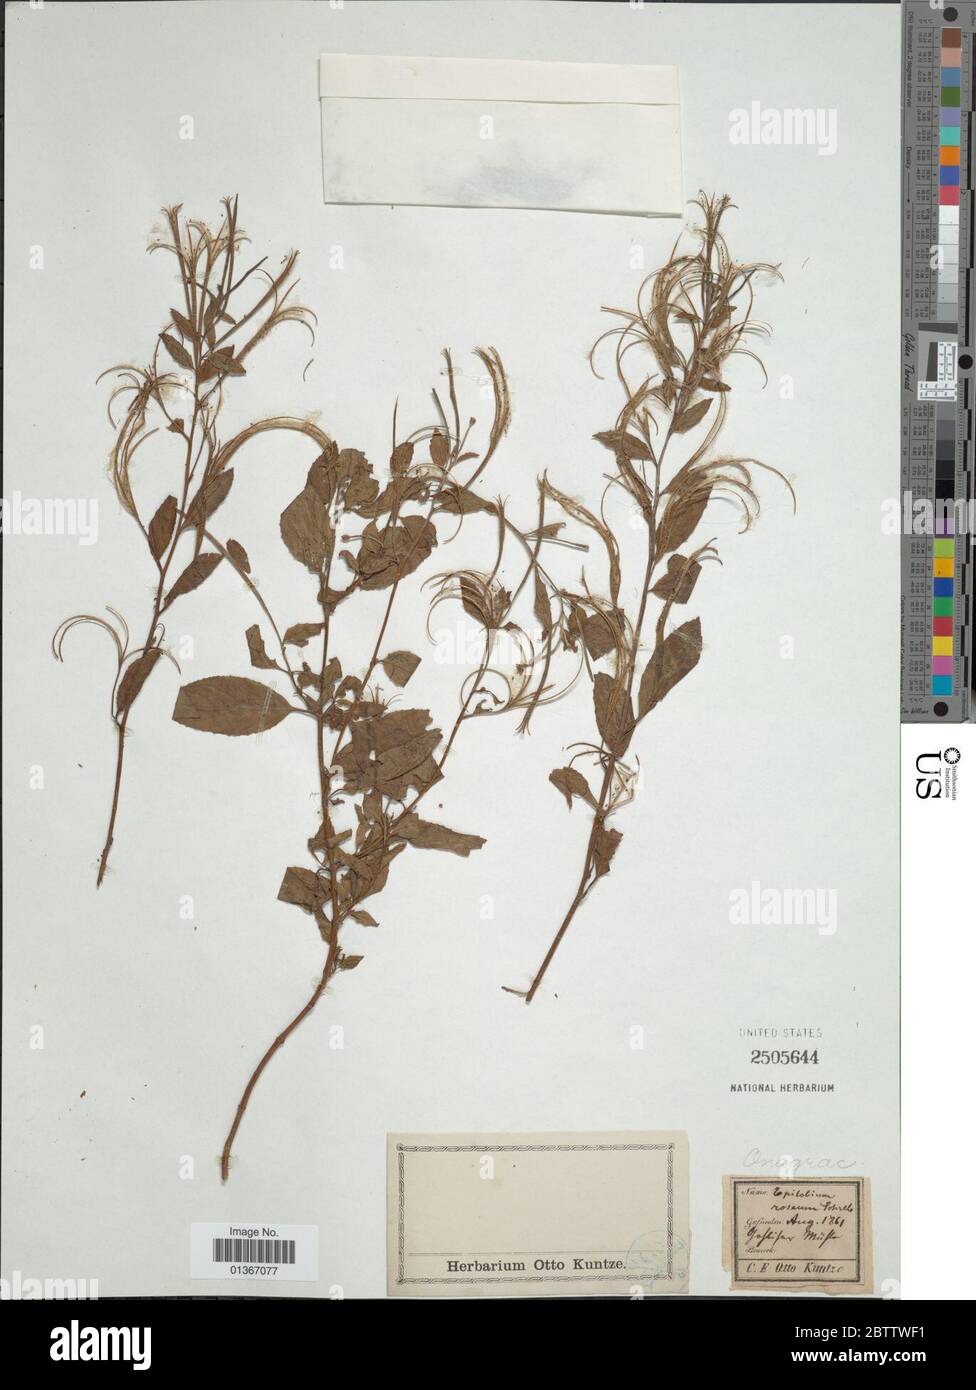 Epilobium roseum Schreb. Stock Photo